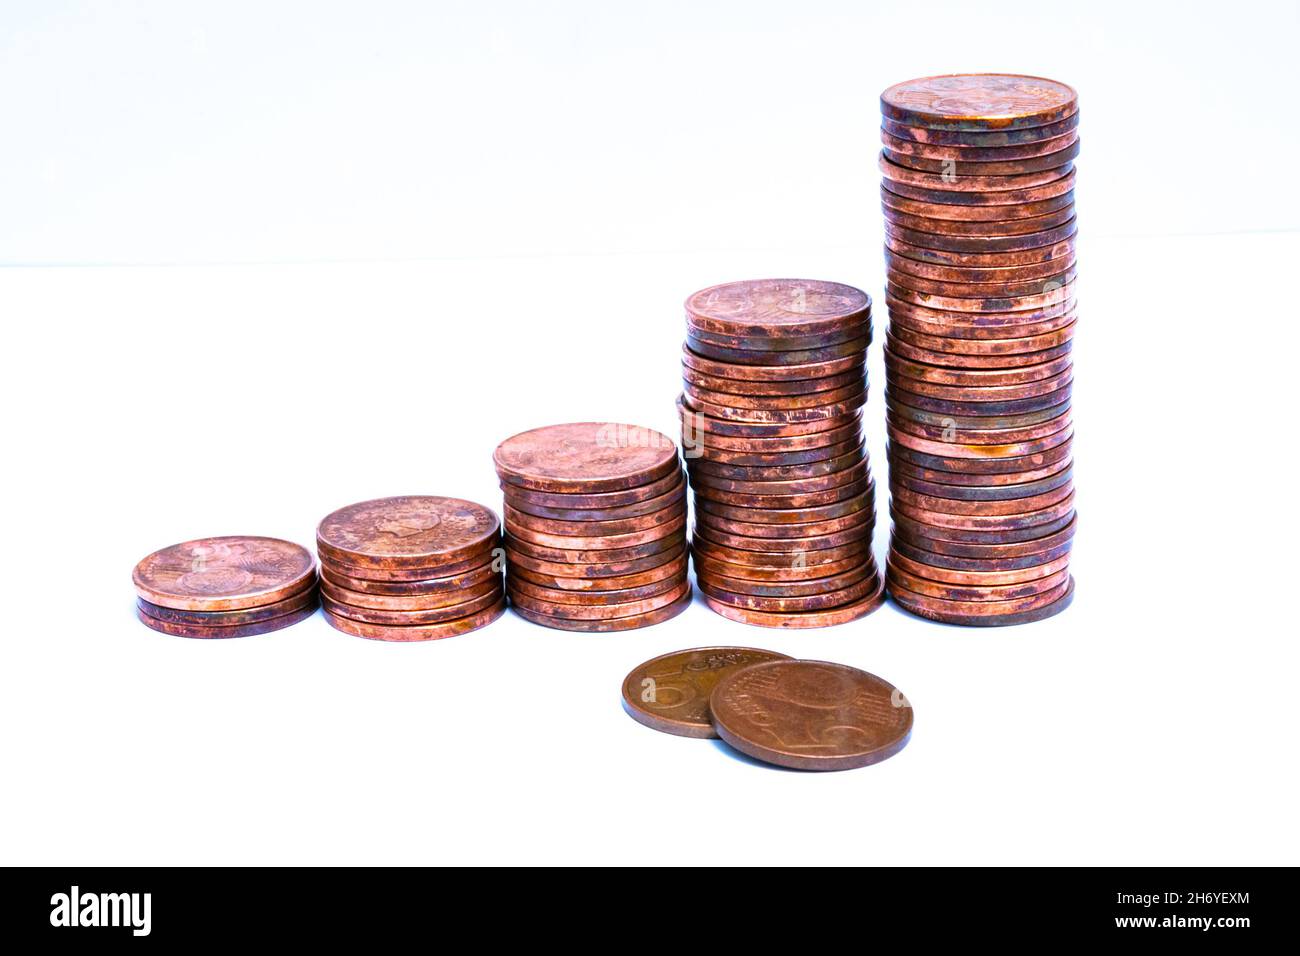 Stapel von Münzen, die allmählich in der Höhe zu erhöhen. Symbolisch für Wirtschaftswachstum oder Inflation. Stockfoto